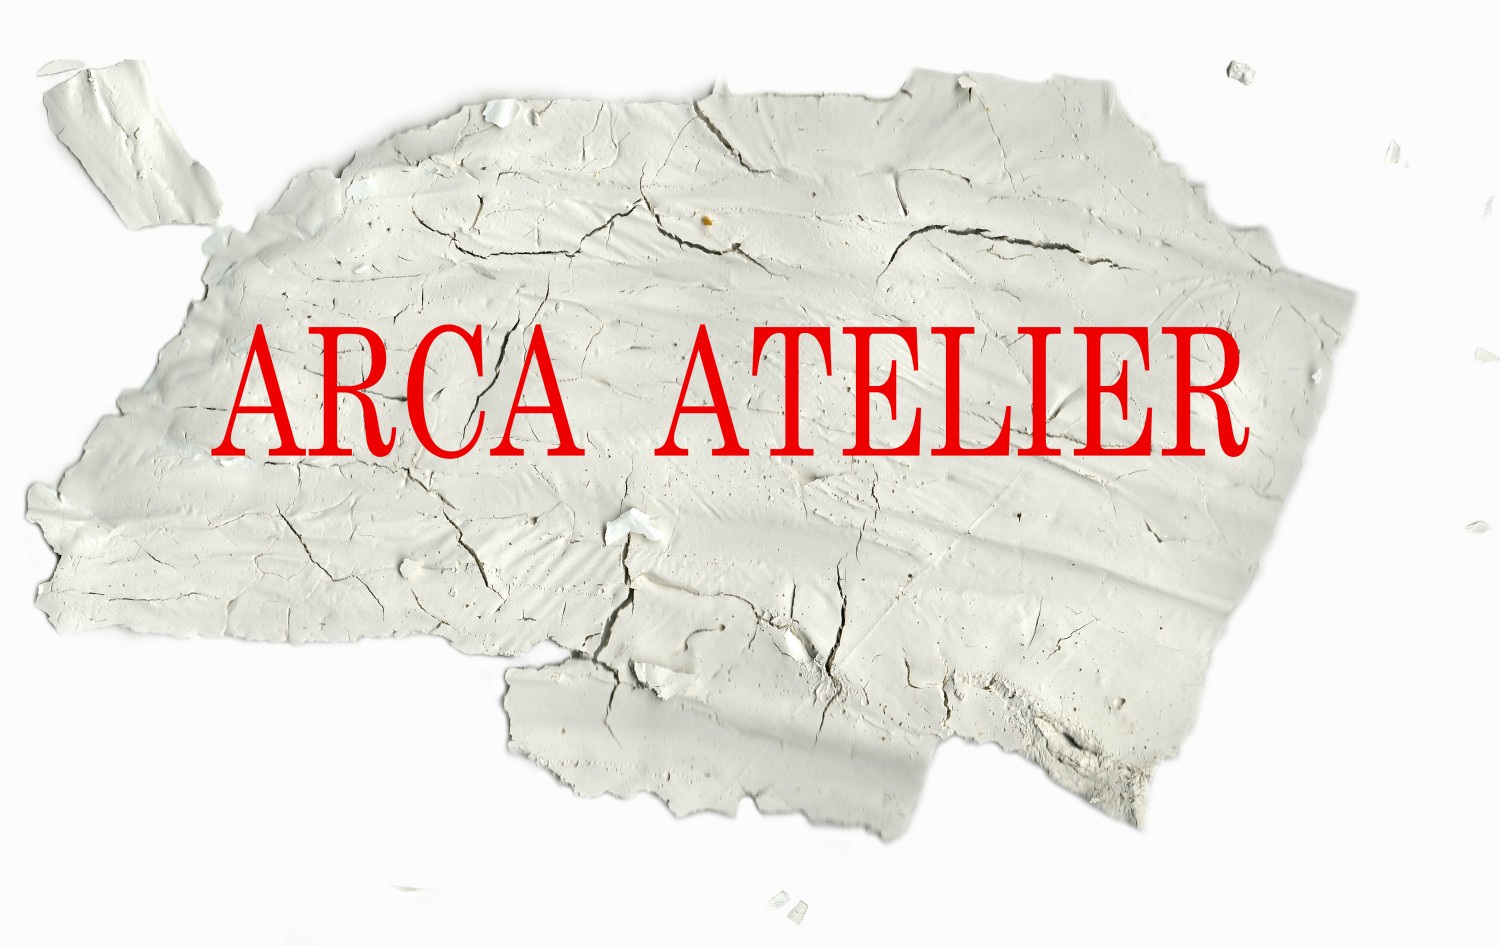 Arca Atelier